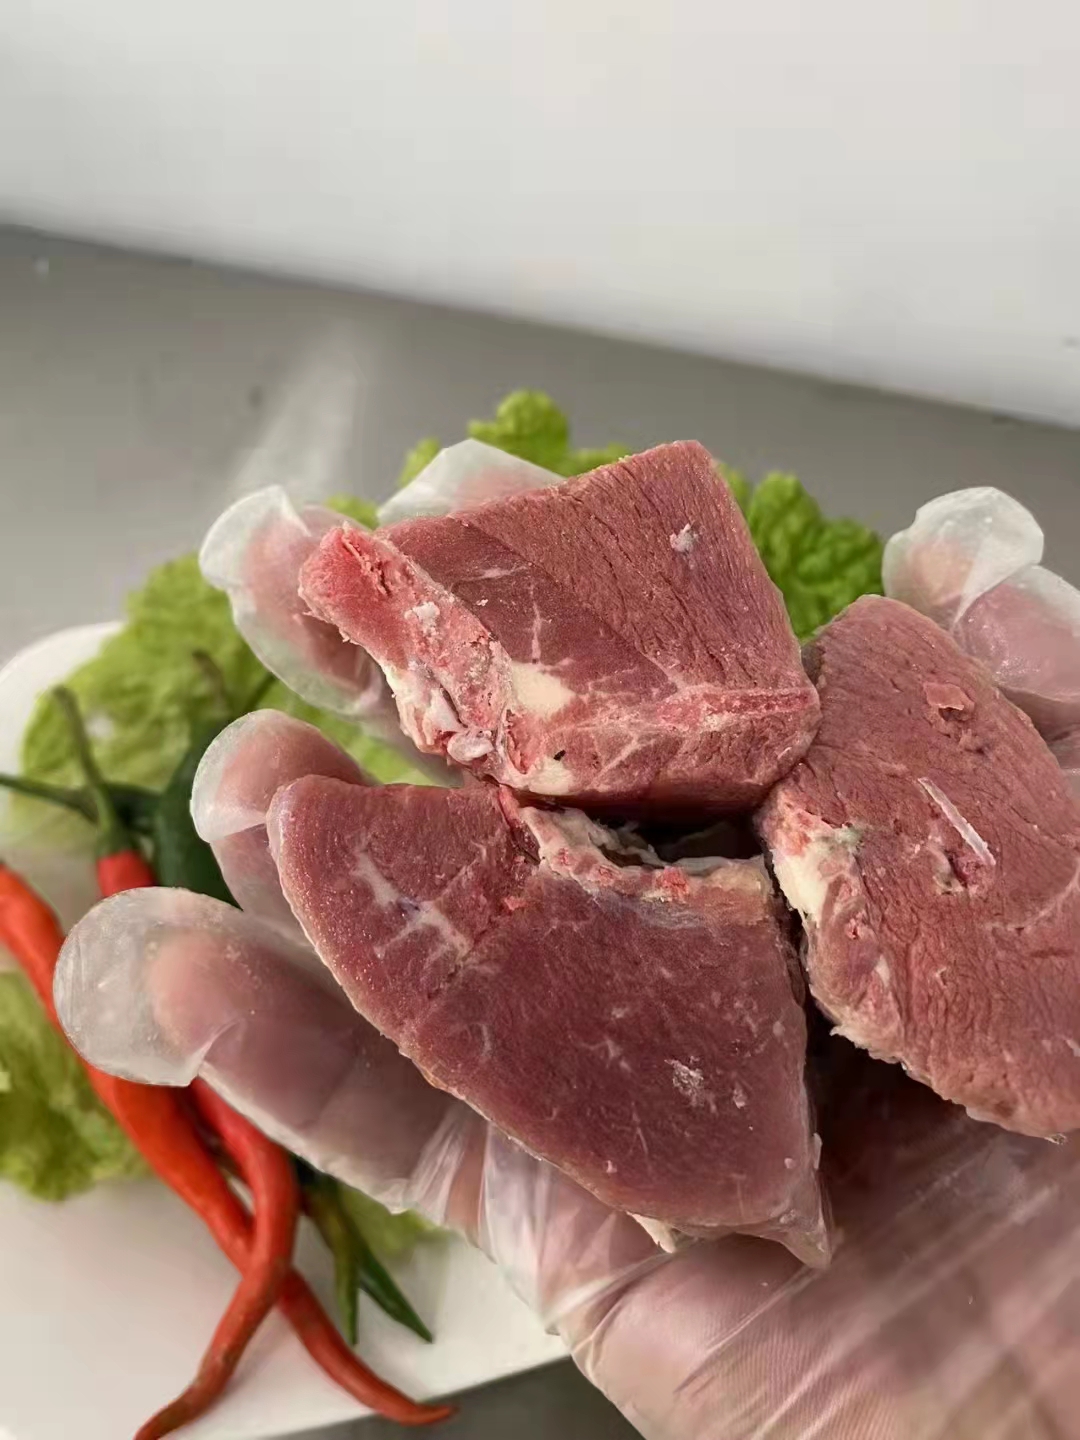 沂南縣鵝肉類  肉鵝  一公斤裝鵝塊 廠家供應電商團購用袋裝純鵝塊